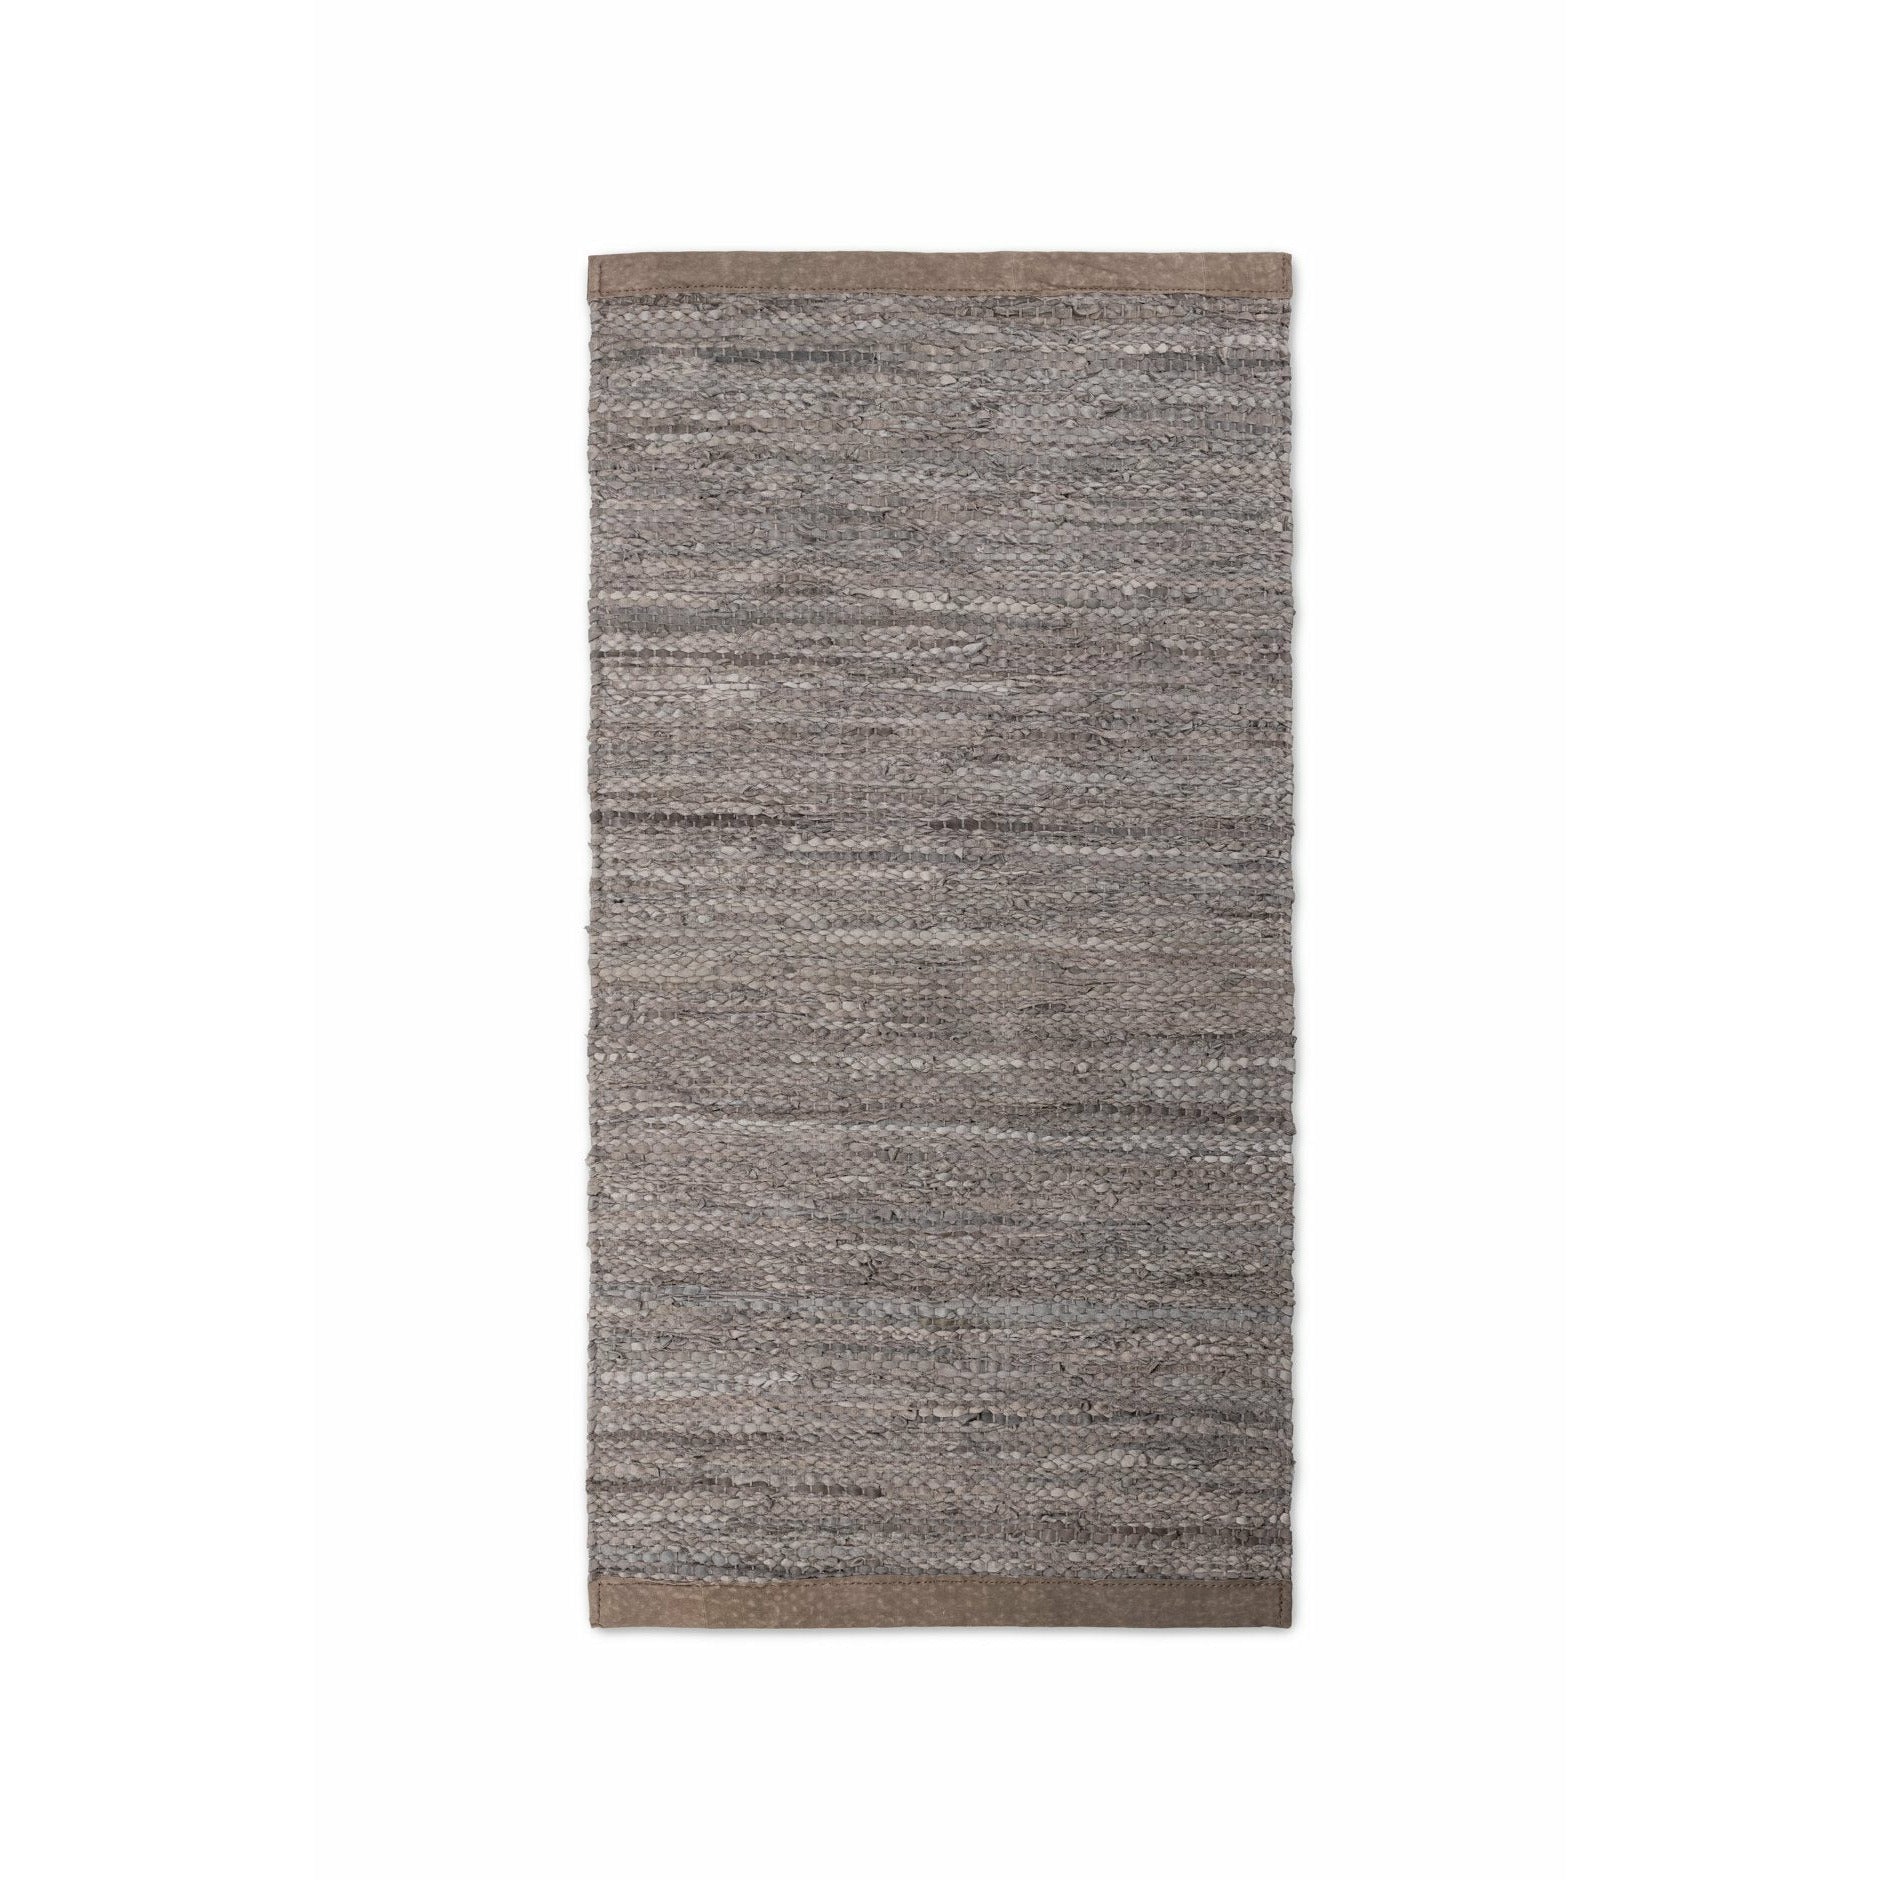 Tappeto in legno con moquette in pelle solida, 60 x 90 cm